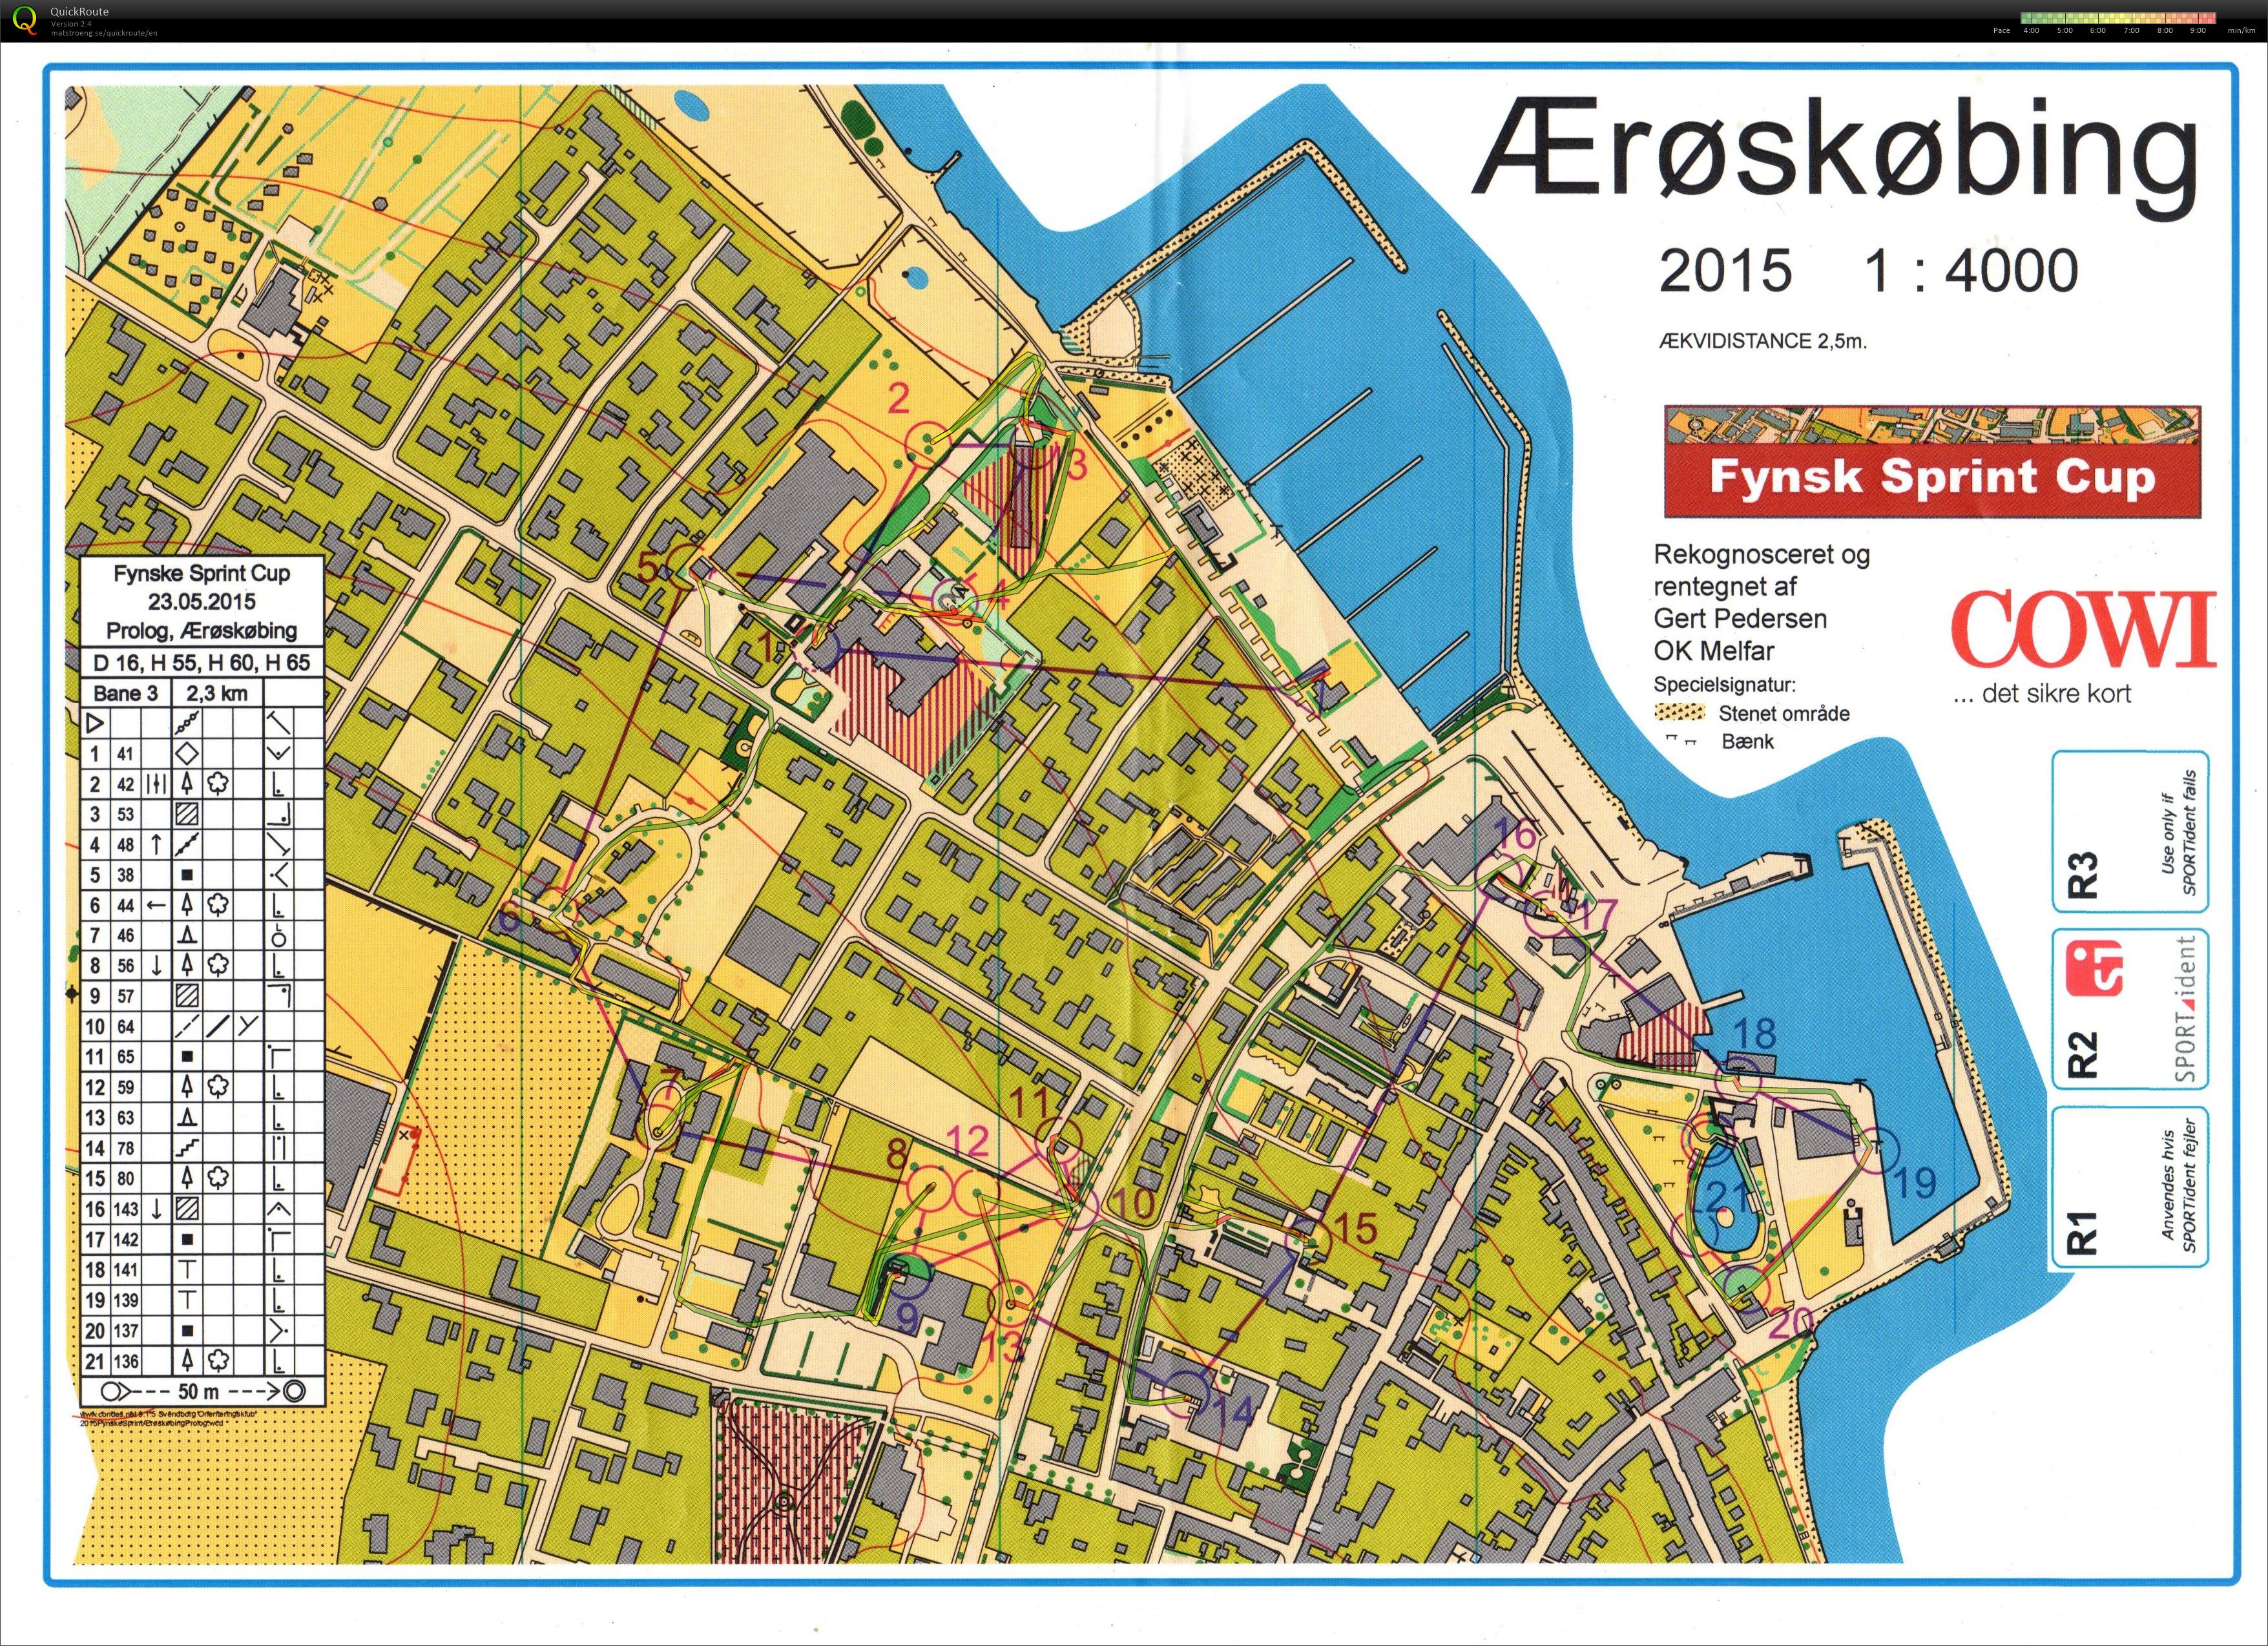 Fynsk Sprint Cup - prolog1 (23.05.2015)